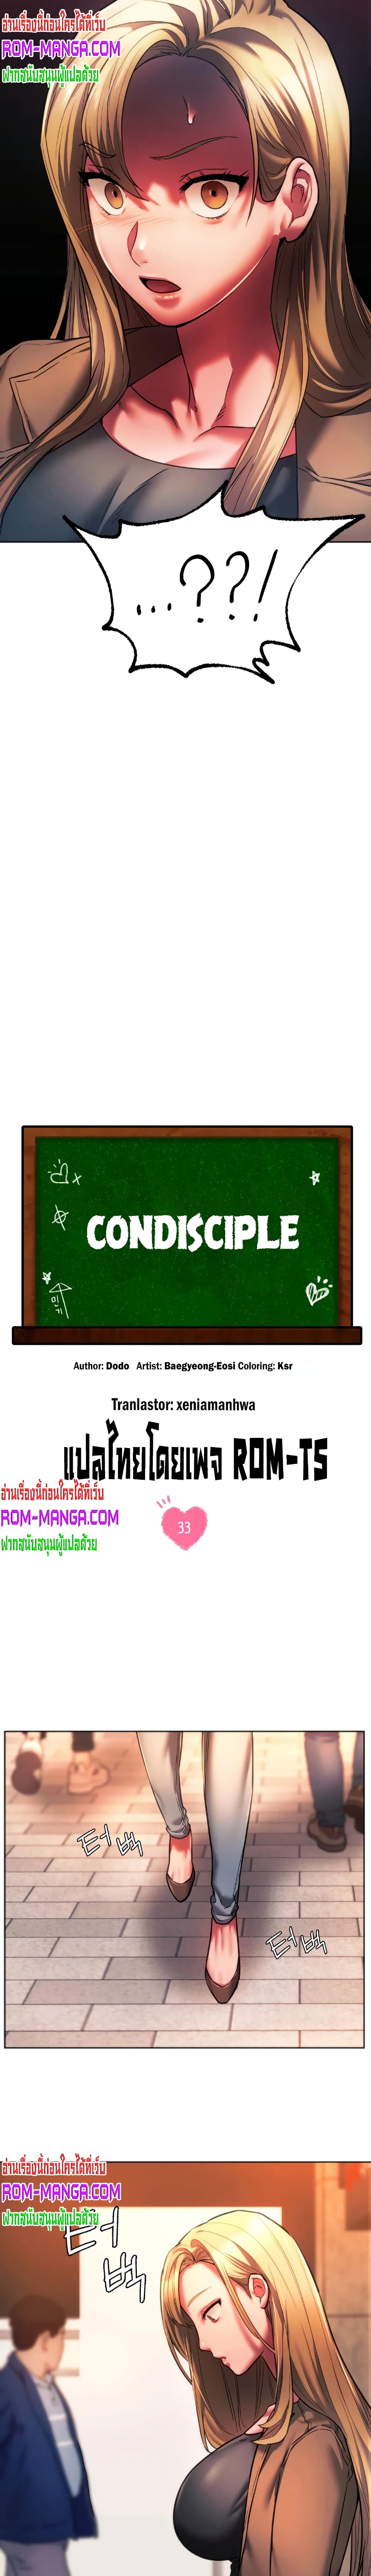 Condisciple 33-33